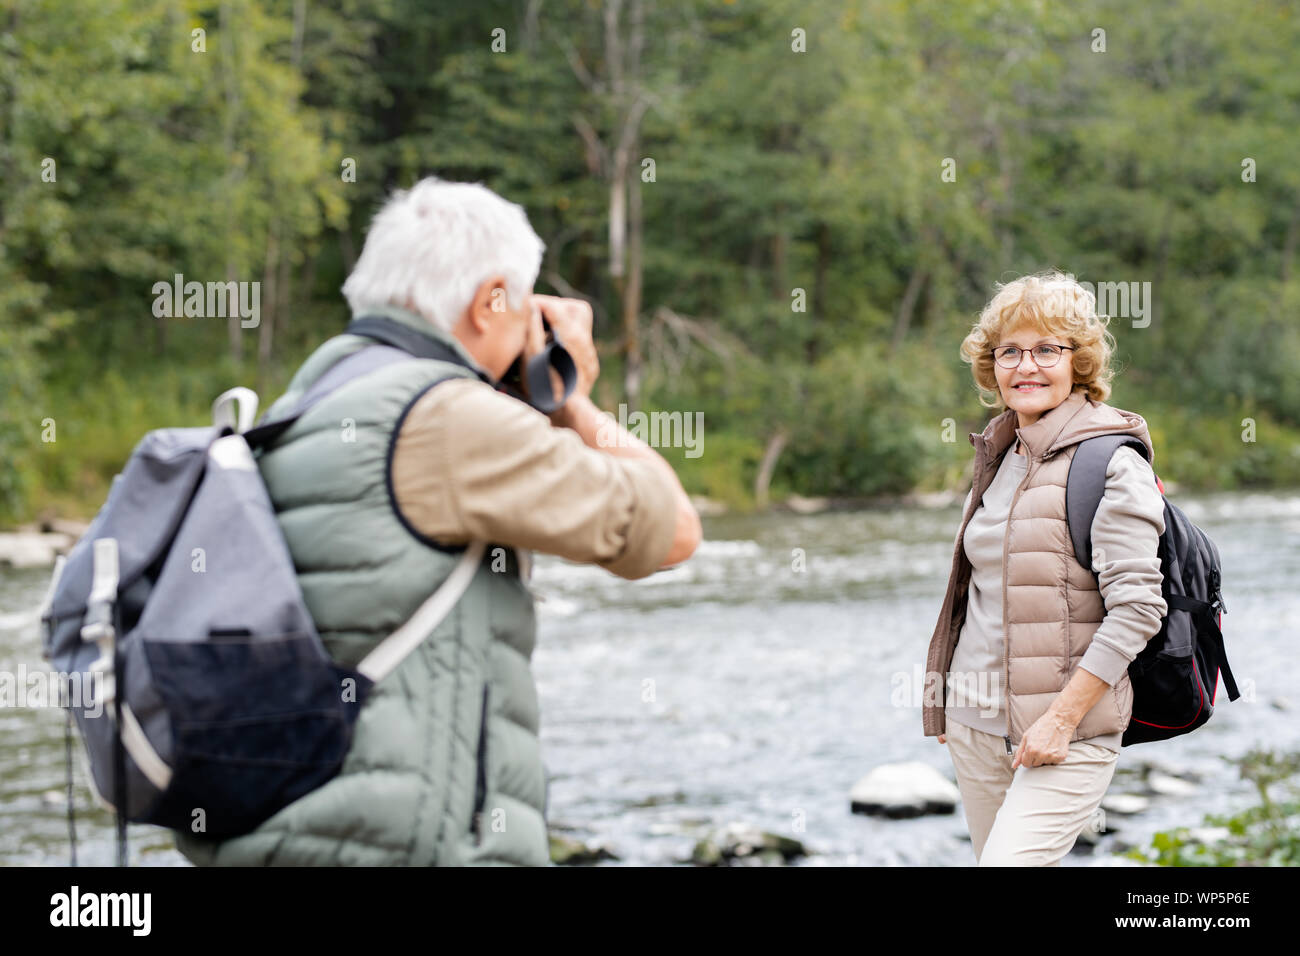 Actif mature backpacker photographier sa femme heureuse sur les bords de la rivière Banque D'Images